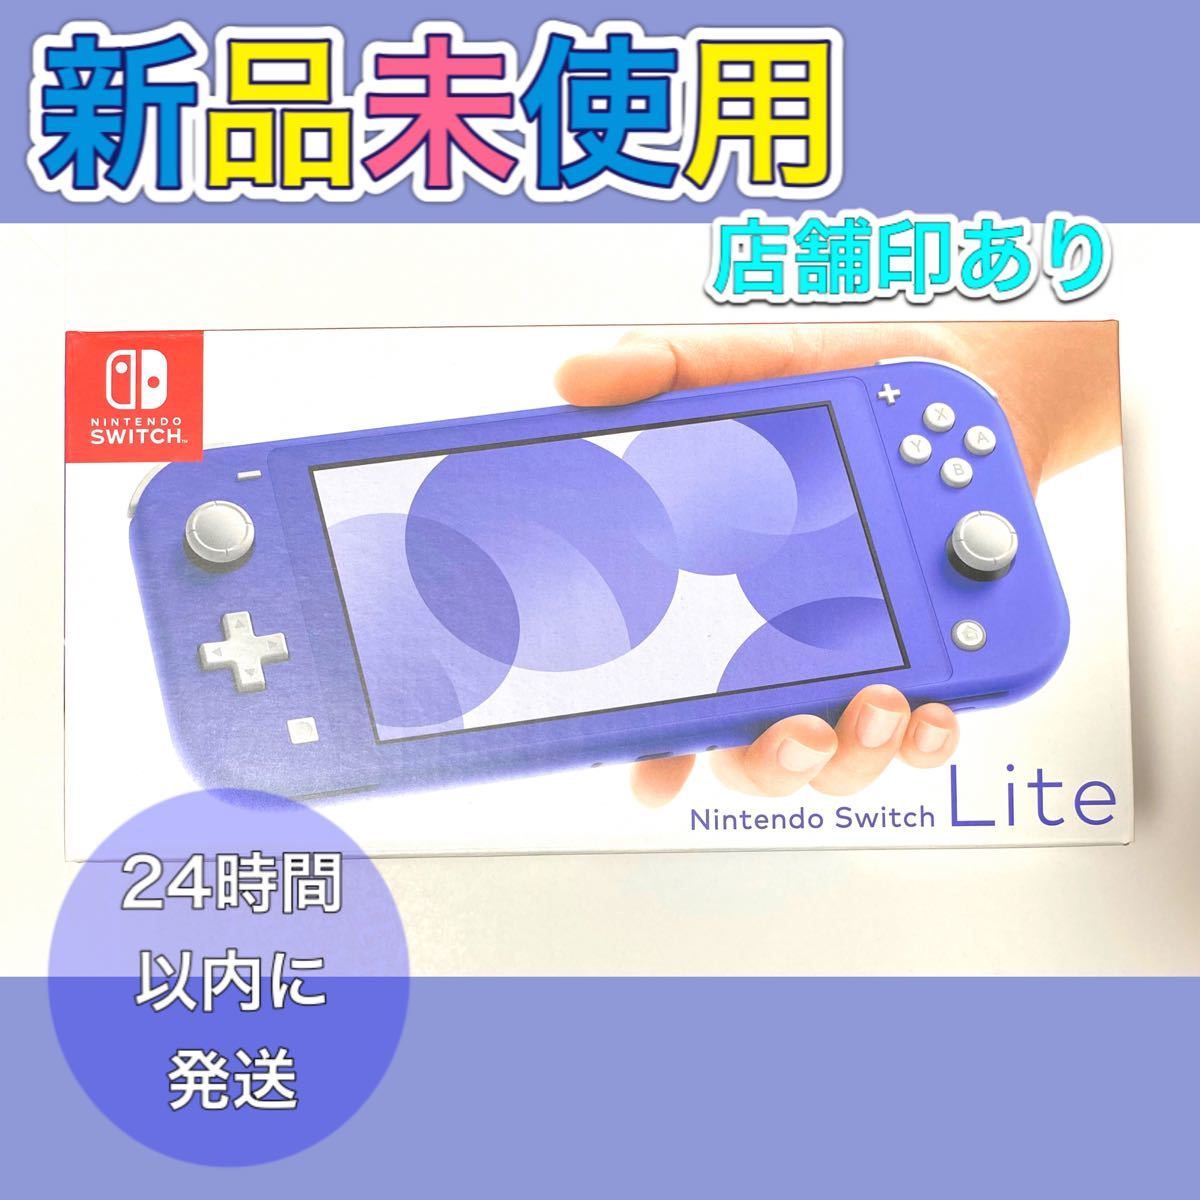 Nintendo Switch lite Blue ニンテンドースイッチライト ブルー 本体 新品未開封 新品未使用 国内正規品